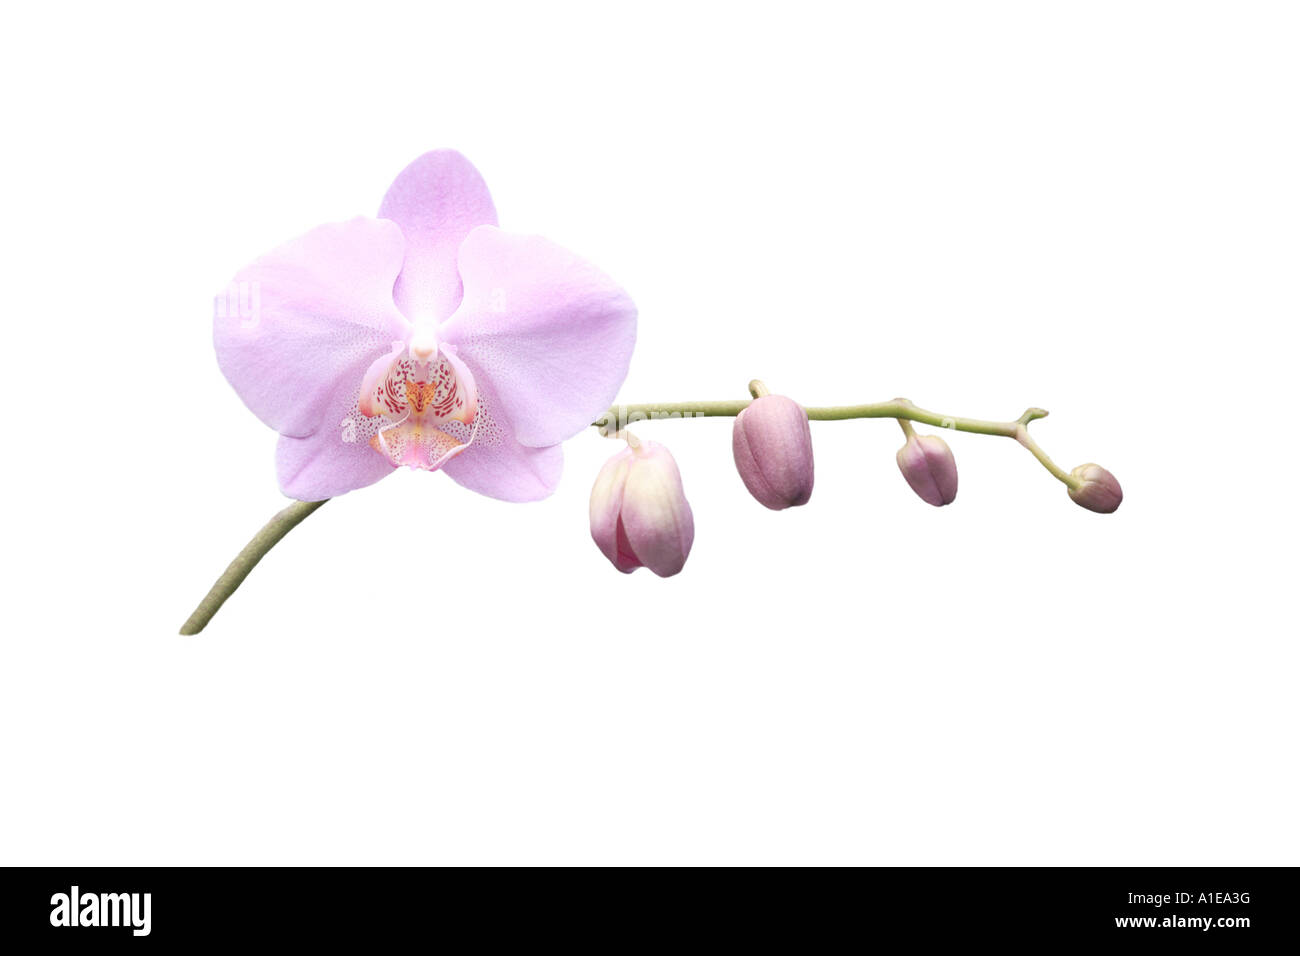 Moth orchid (Phalaenopsis ibrido), ordine di sviluppo dei Fiori, Foto serie 2/9 Foto Stock